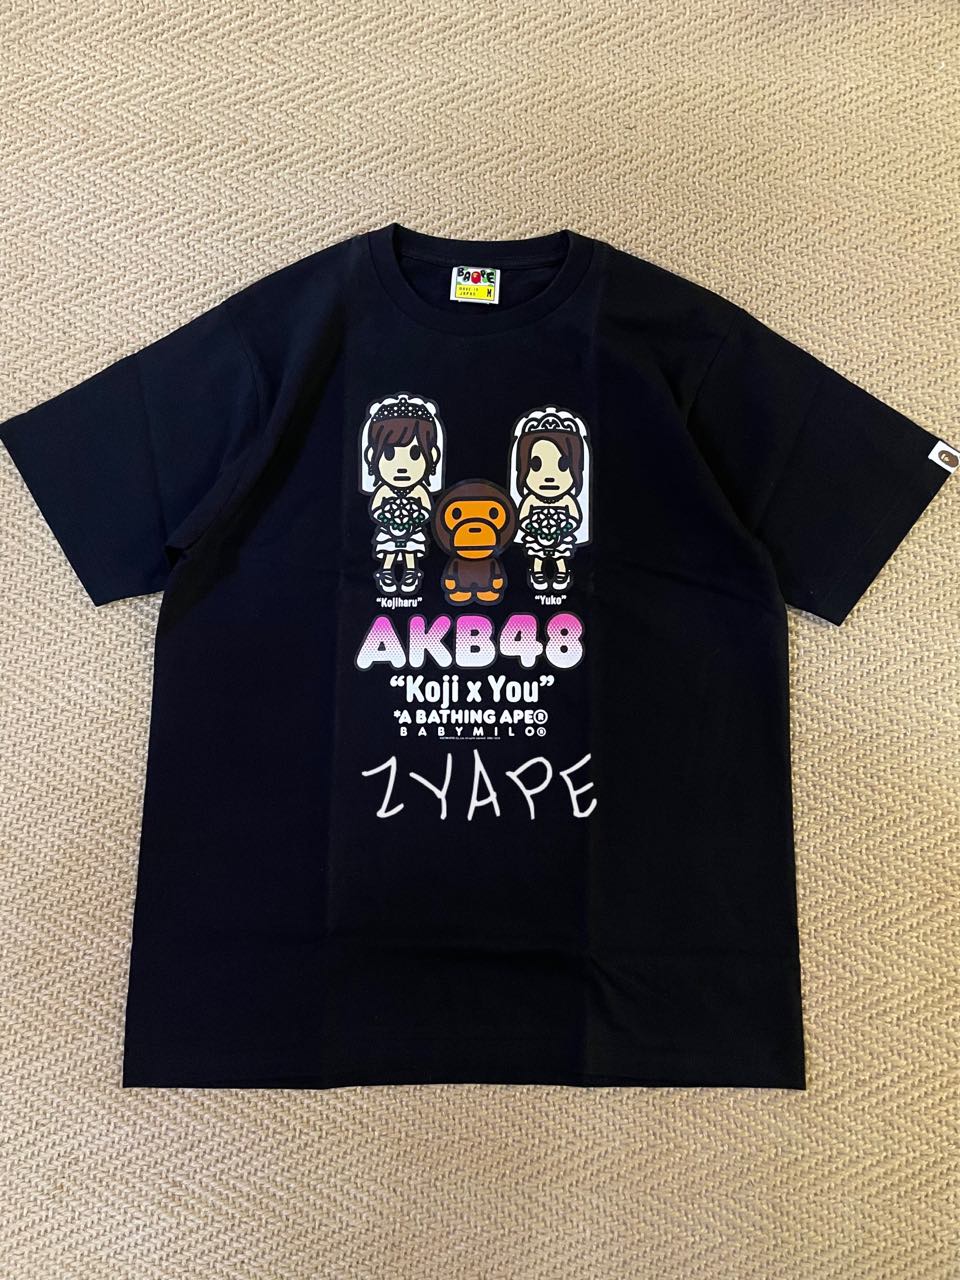 现货 BAPE X AKB48 小嶋阳菜AND大岛优子卡通婚纱短袖T恤